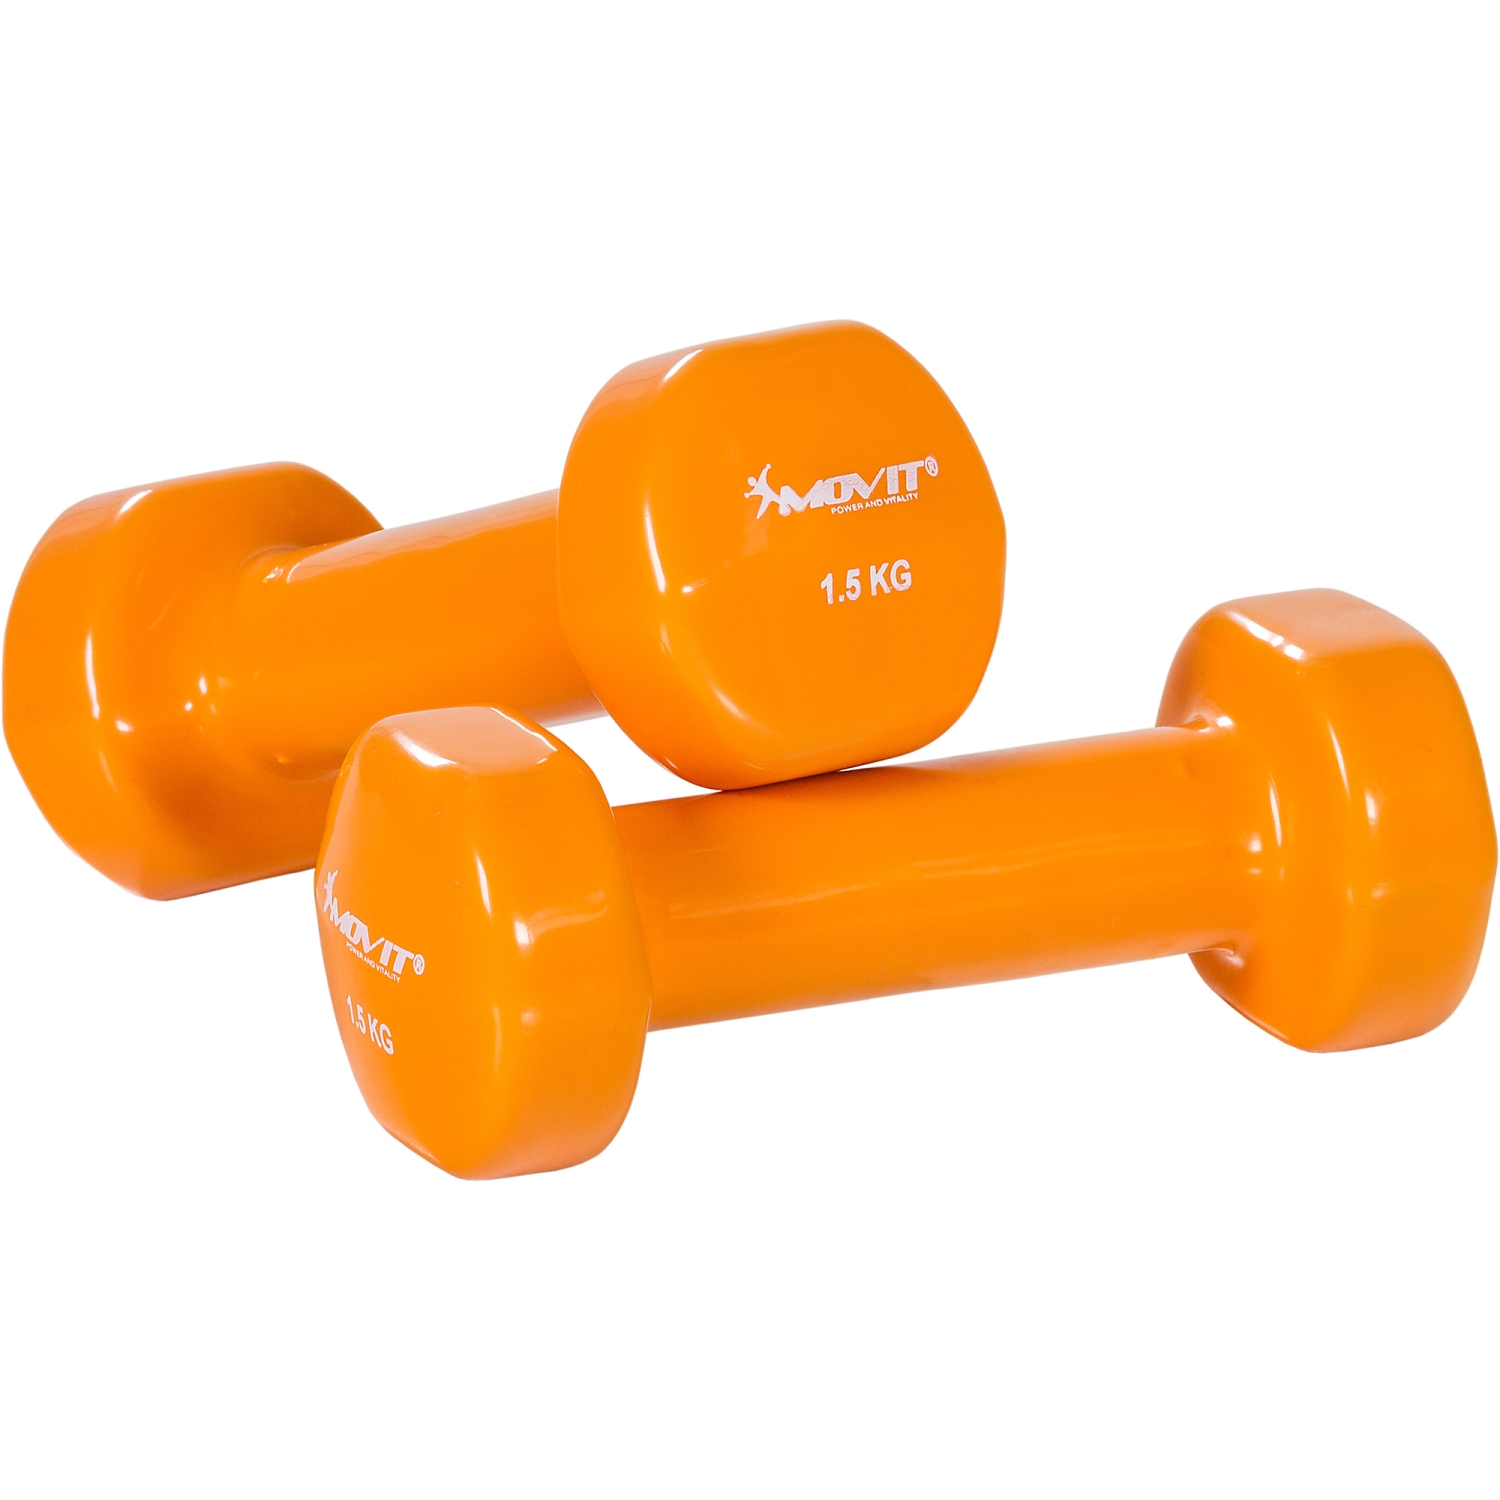 Dumbells set – Gewichten – Fitness – 2x 1.5 kg – Oranje